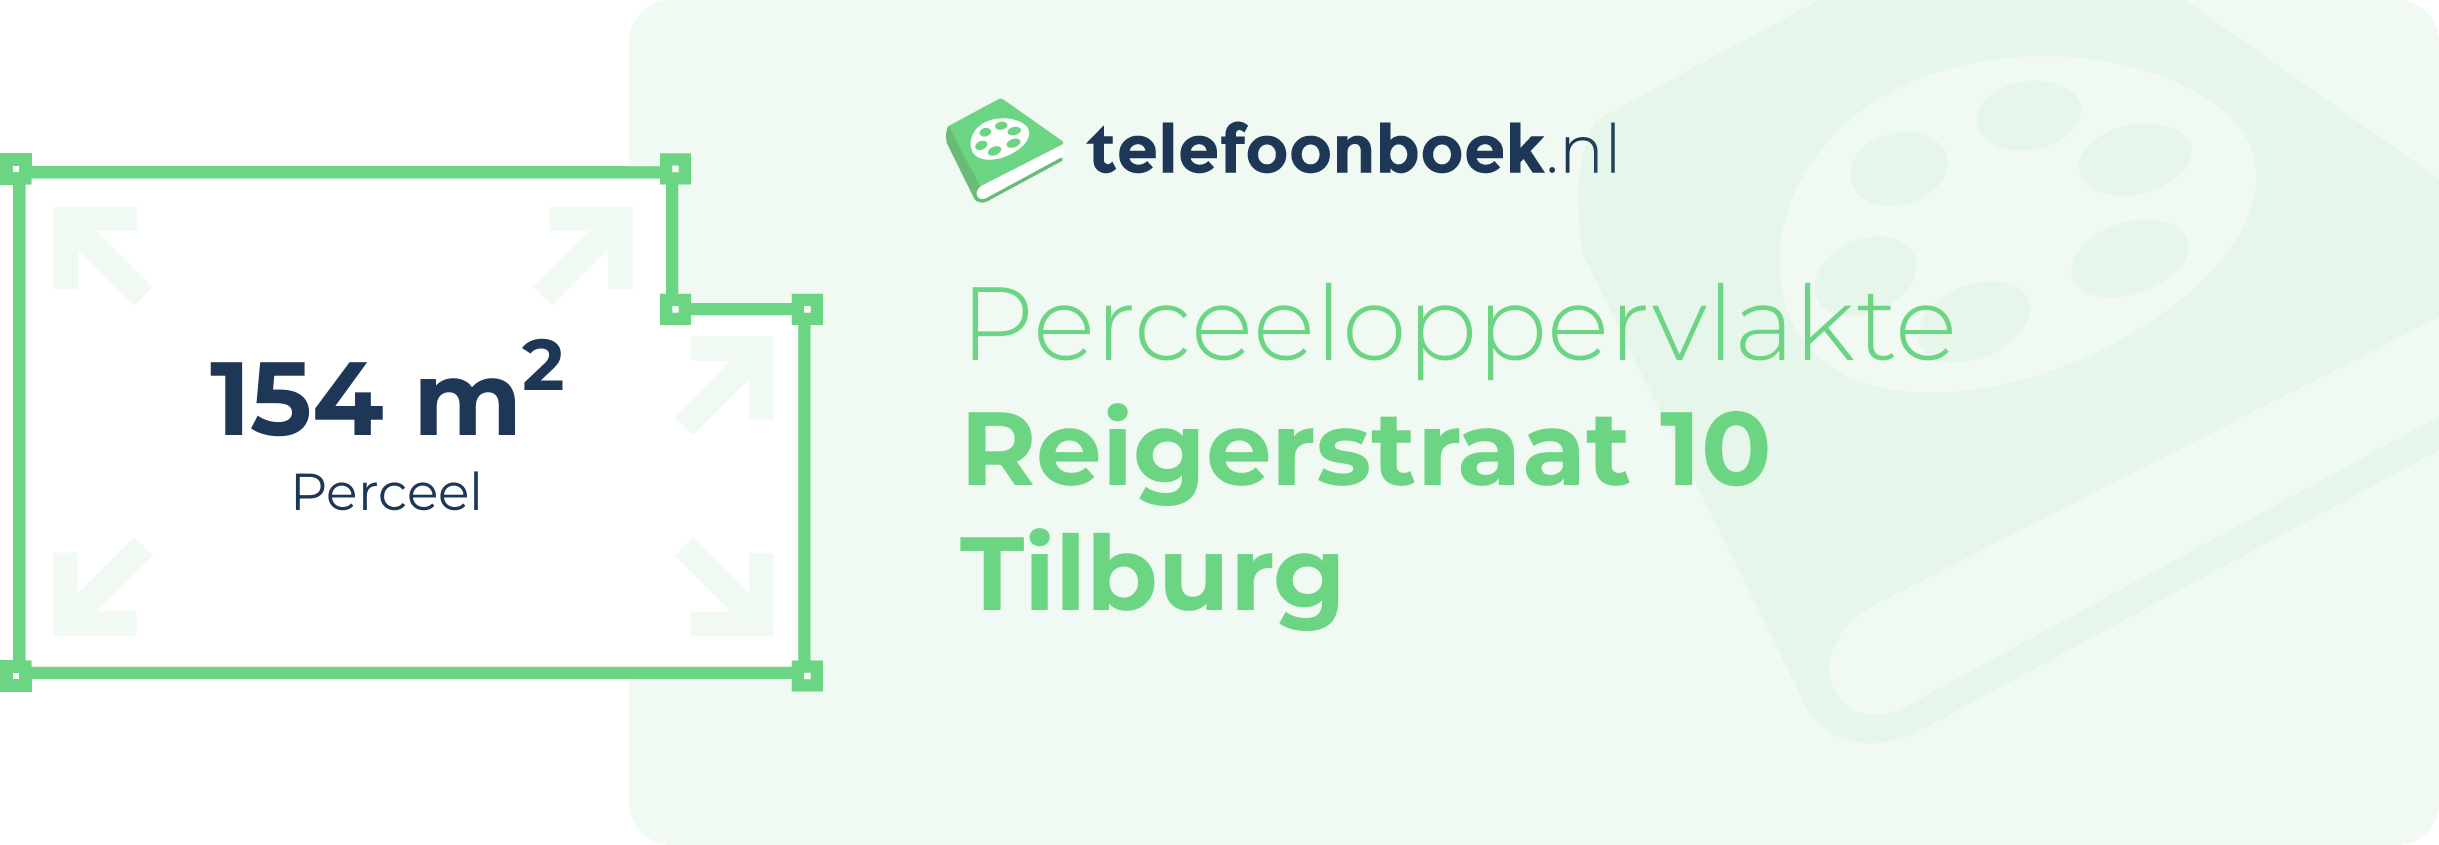 Perceeloppervlakte Reigerstraat 10 Tilburg